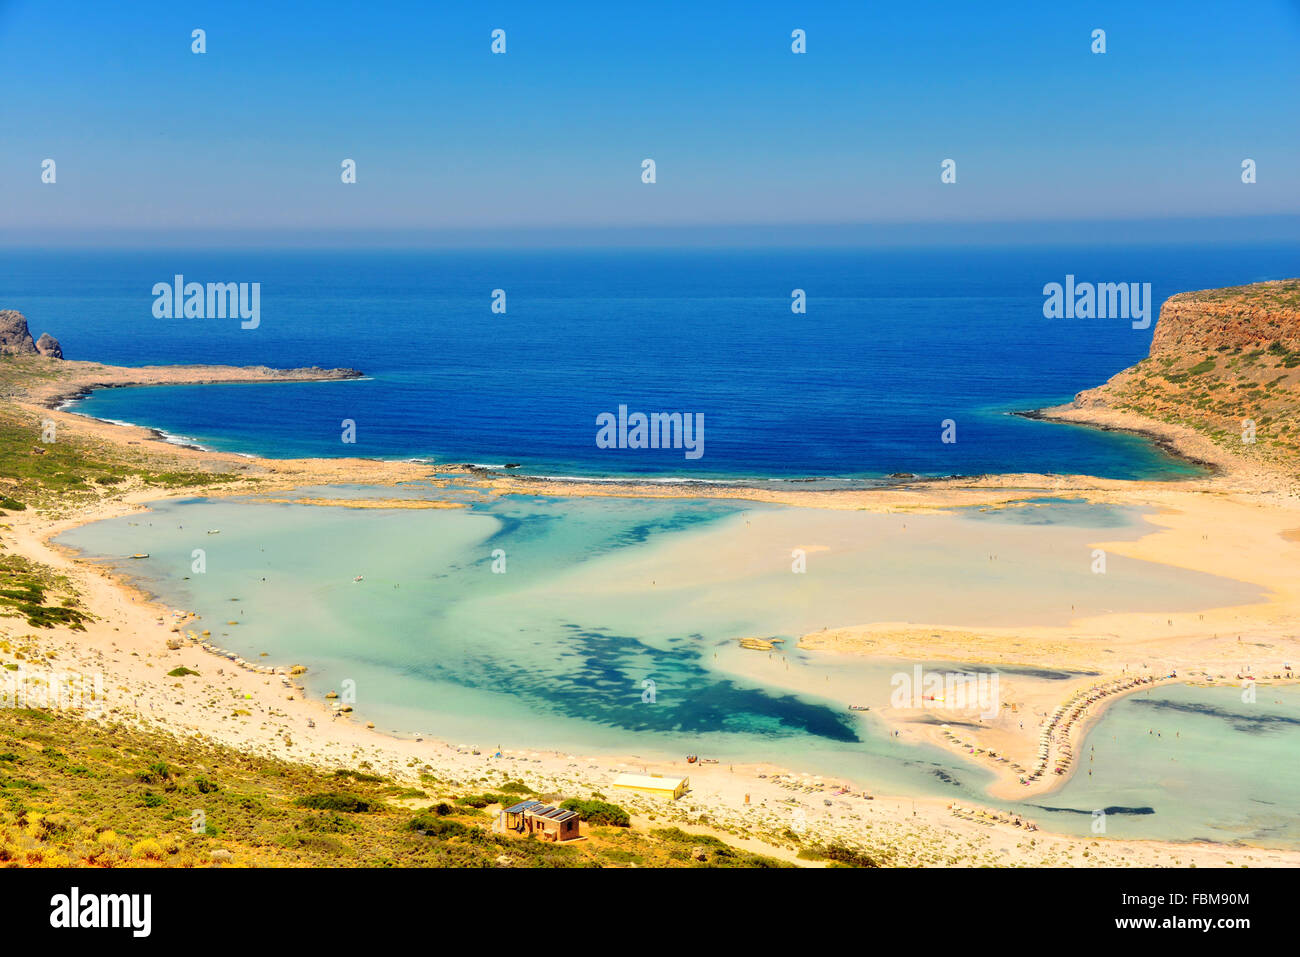 Balos beach, Gramvousa, Crete, Greece Stock Photo